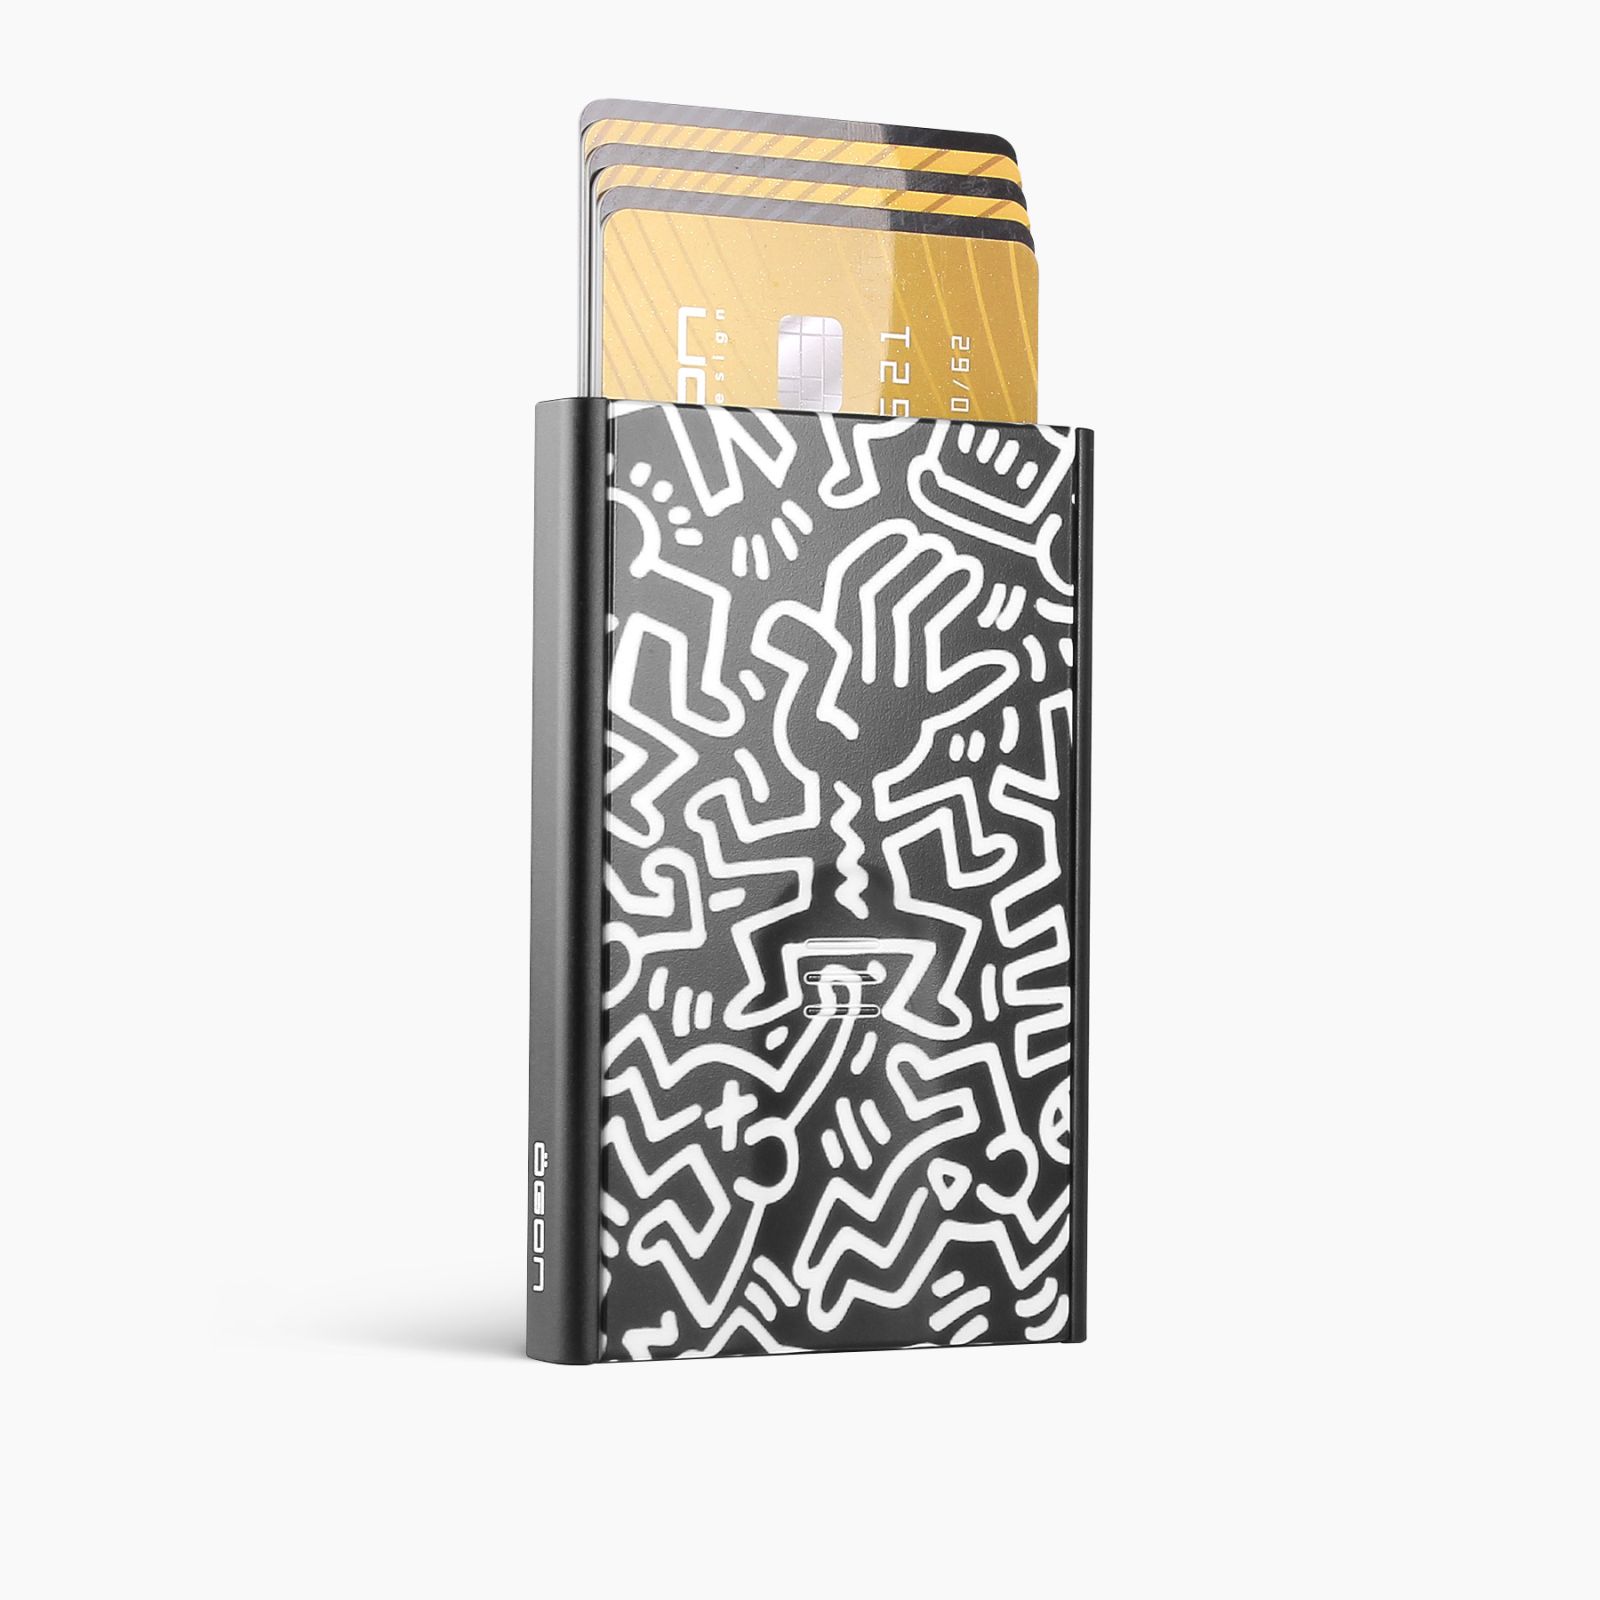 OGON Slider Aluminum Wallet - Keith Haring White